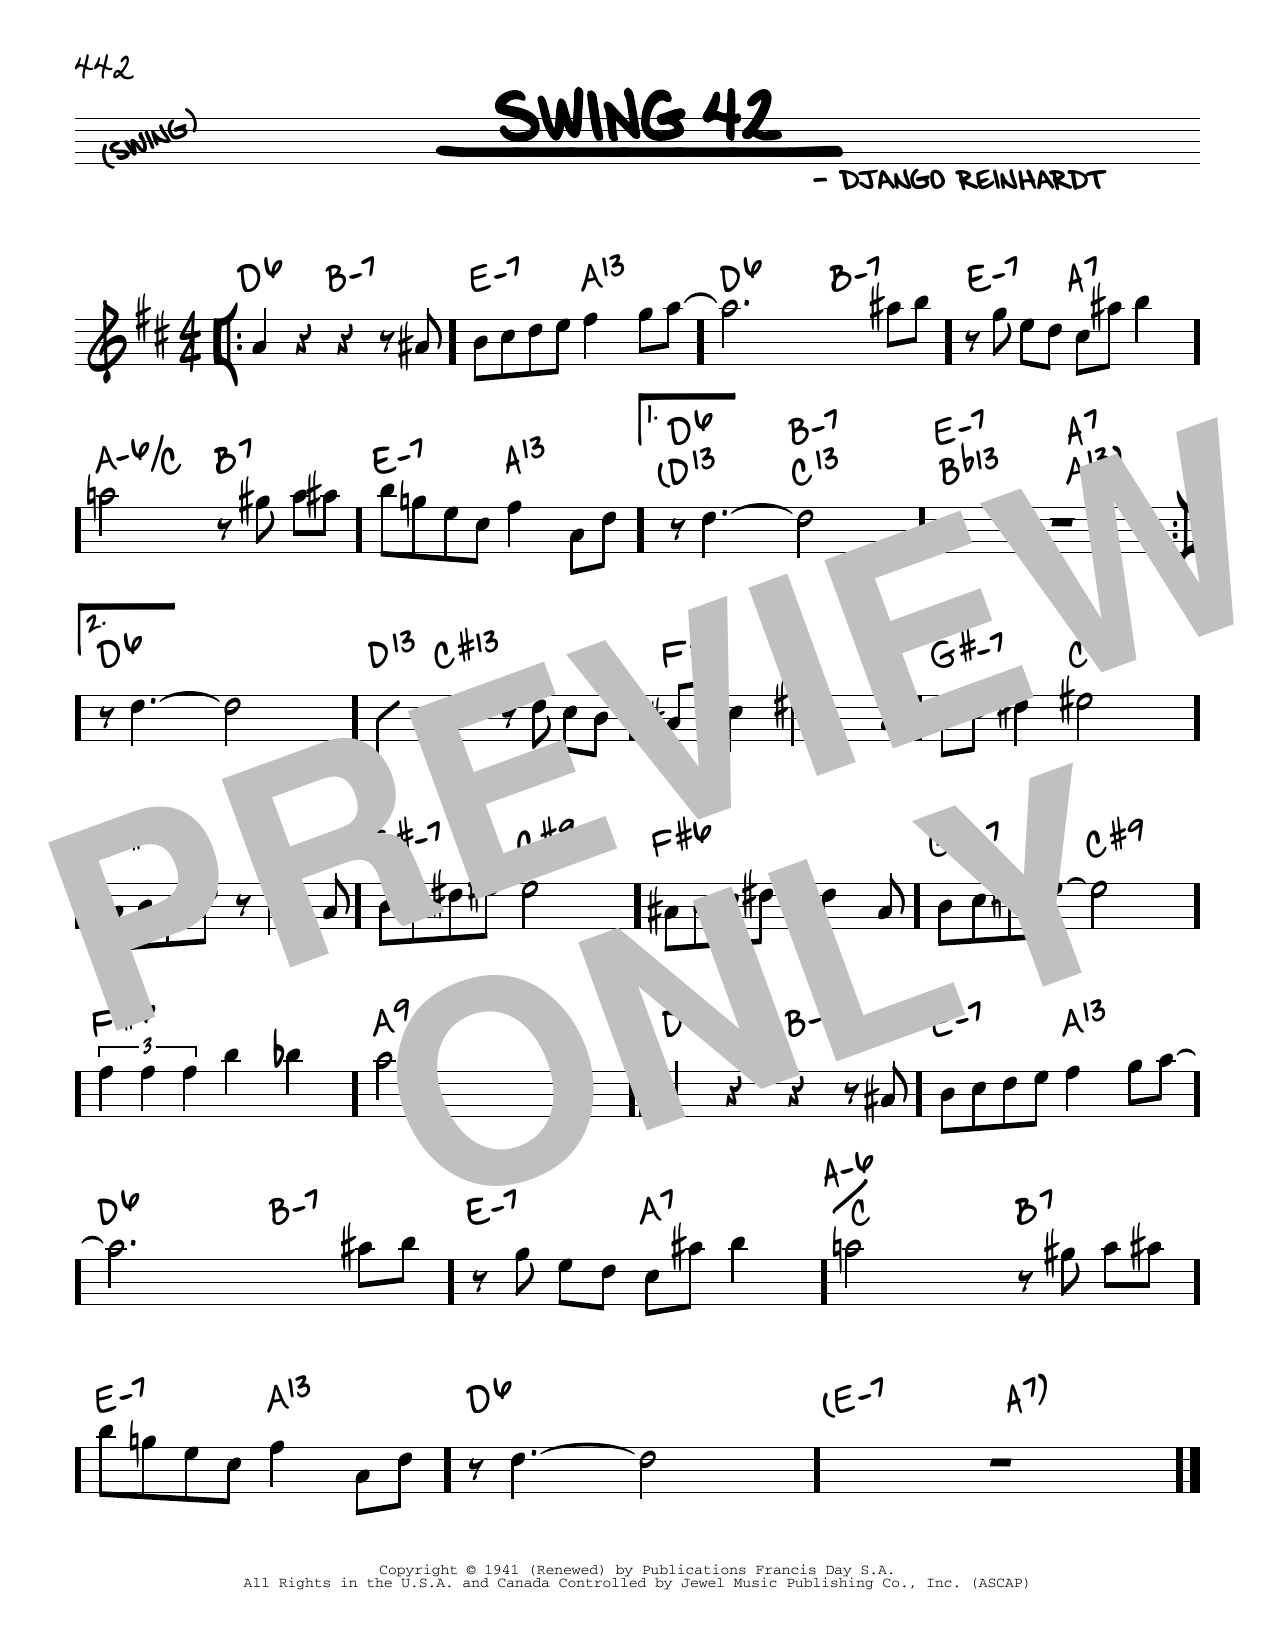 Django Reinhardt Swing 42 sheet music notes and chords. Download Printable PDF.